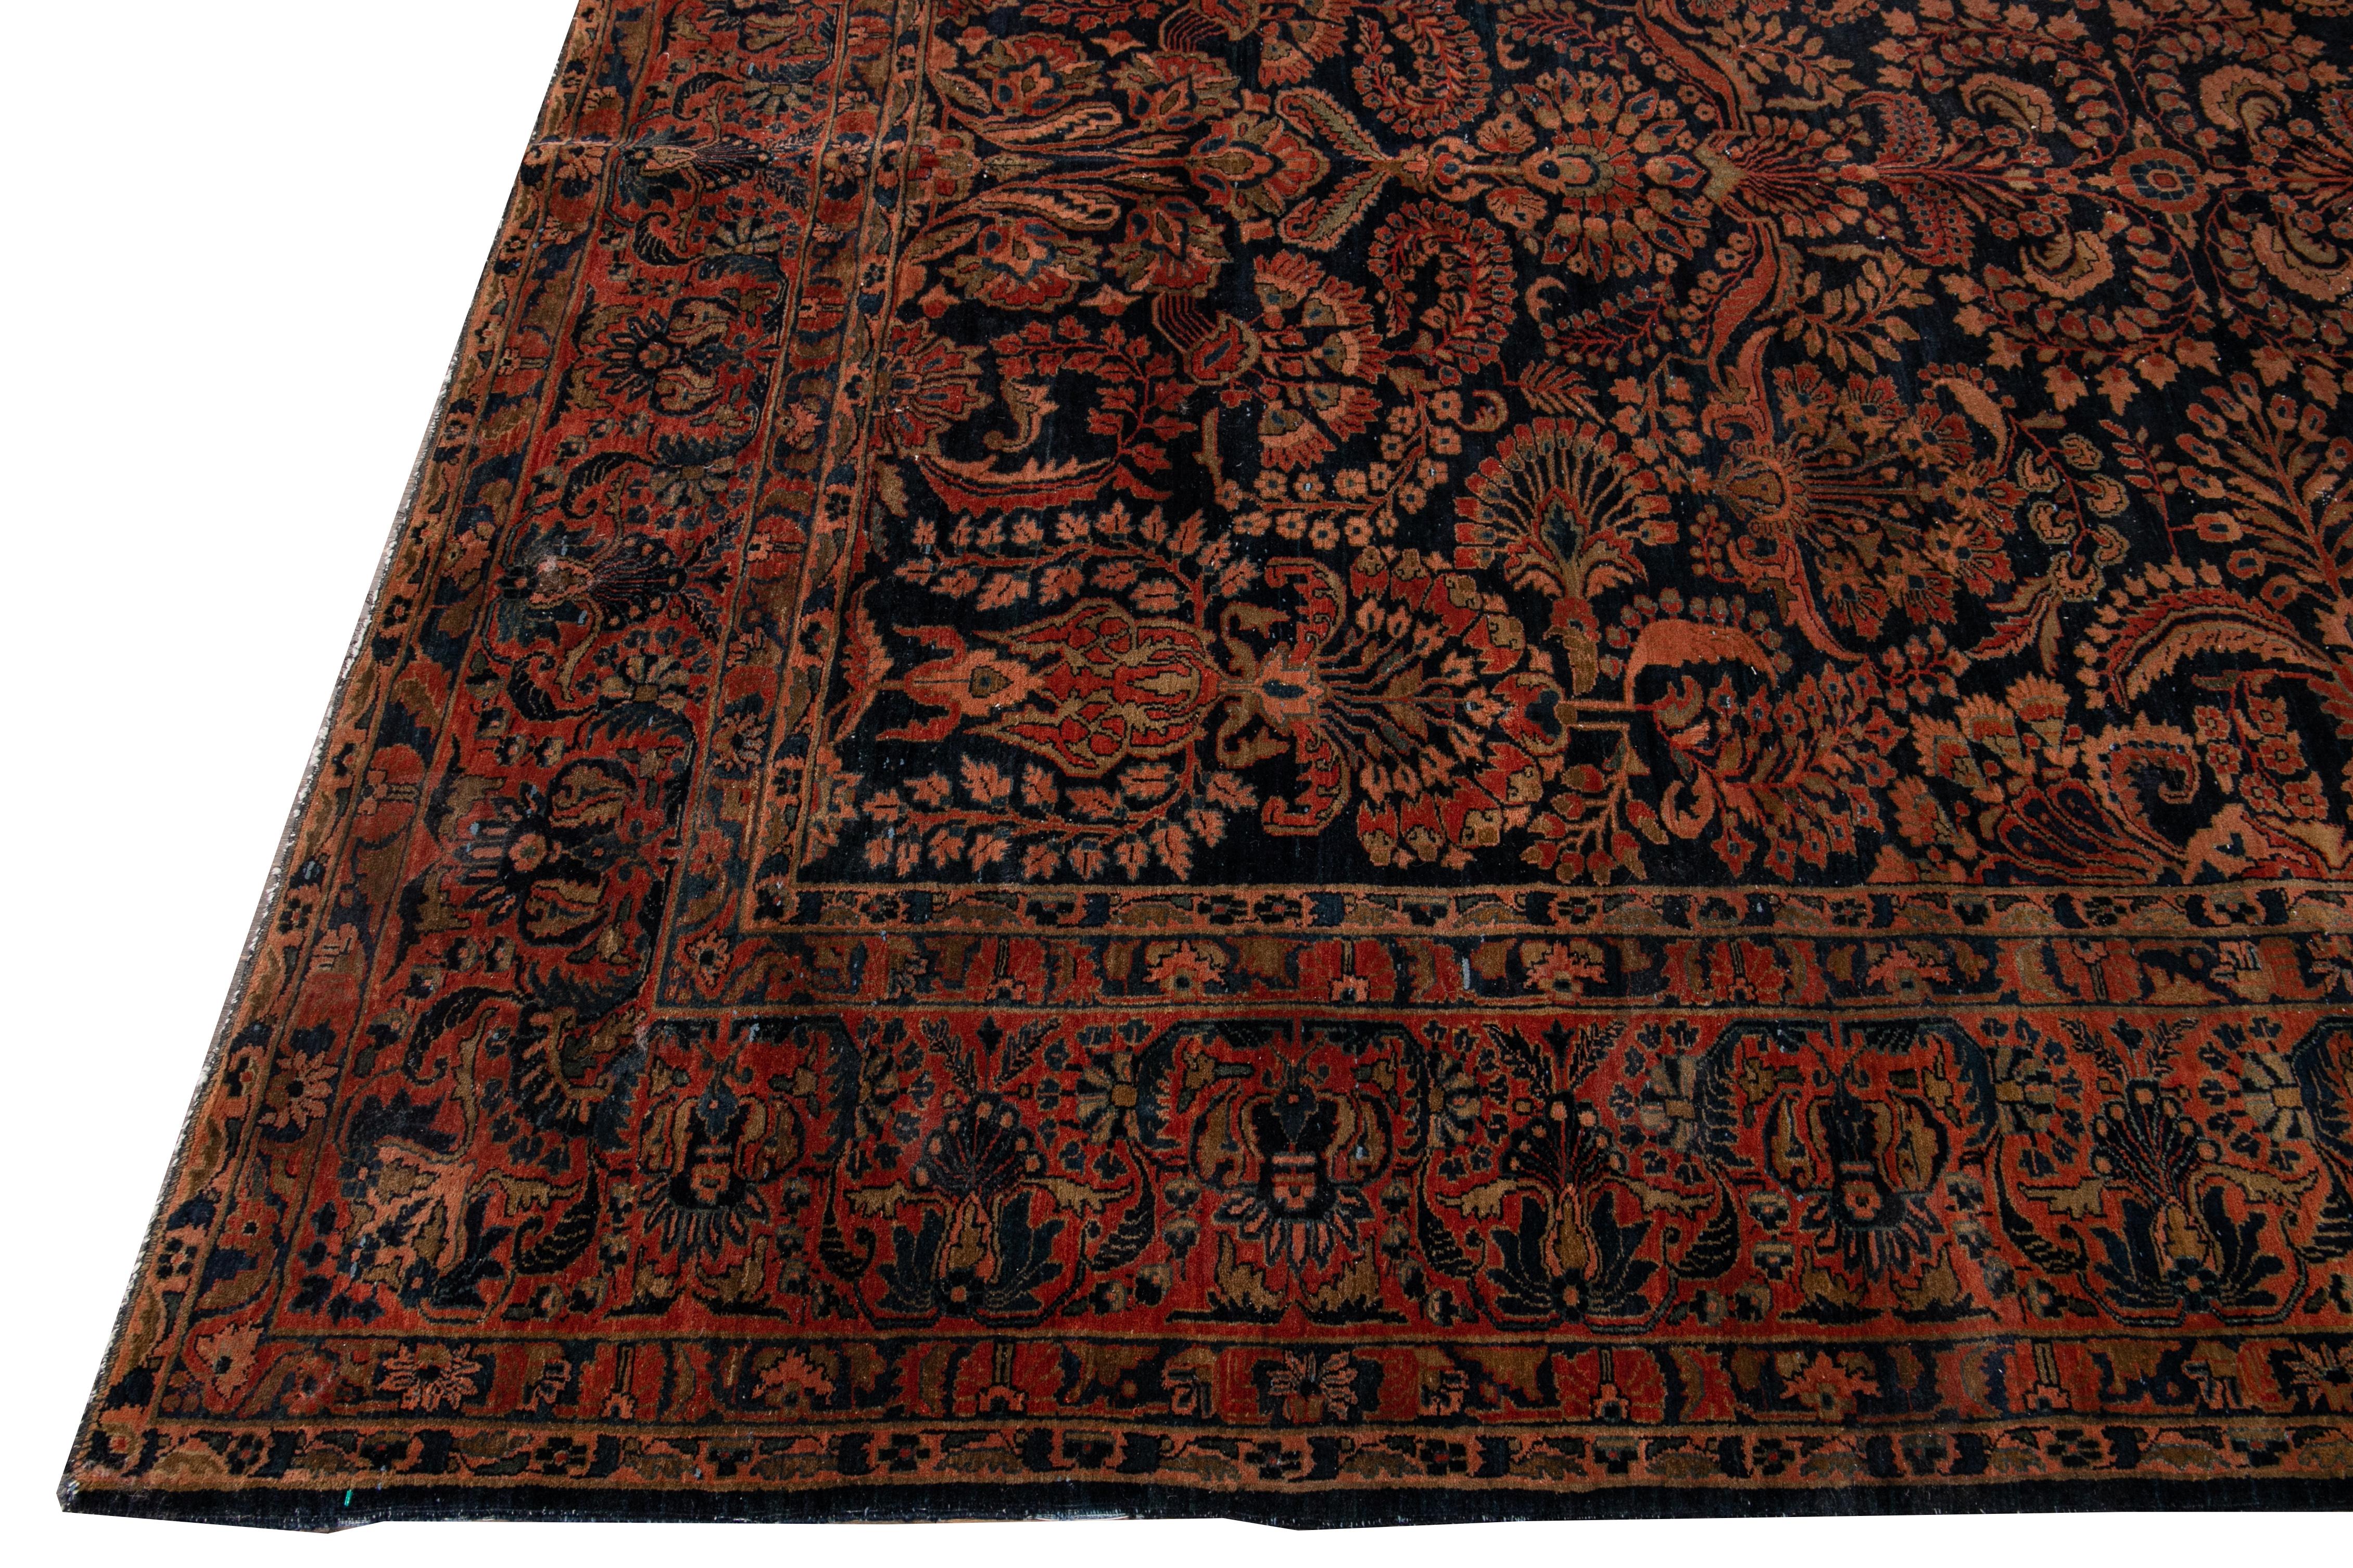 Schöner antiker Sarouk-Farahan-Teppich aus handgeknüpfter Wolle mit marineblauem Feld. Dieser Farahan-Teppich hat einen rostfarbenen Rahmen und pfirsichfarbene Akzente auf einem herrlichen klassischen botanischen Blumenmuster

Dieser Teppich misst